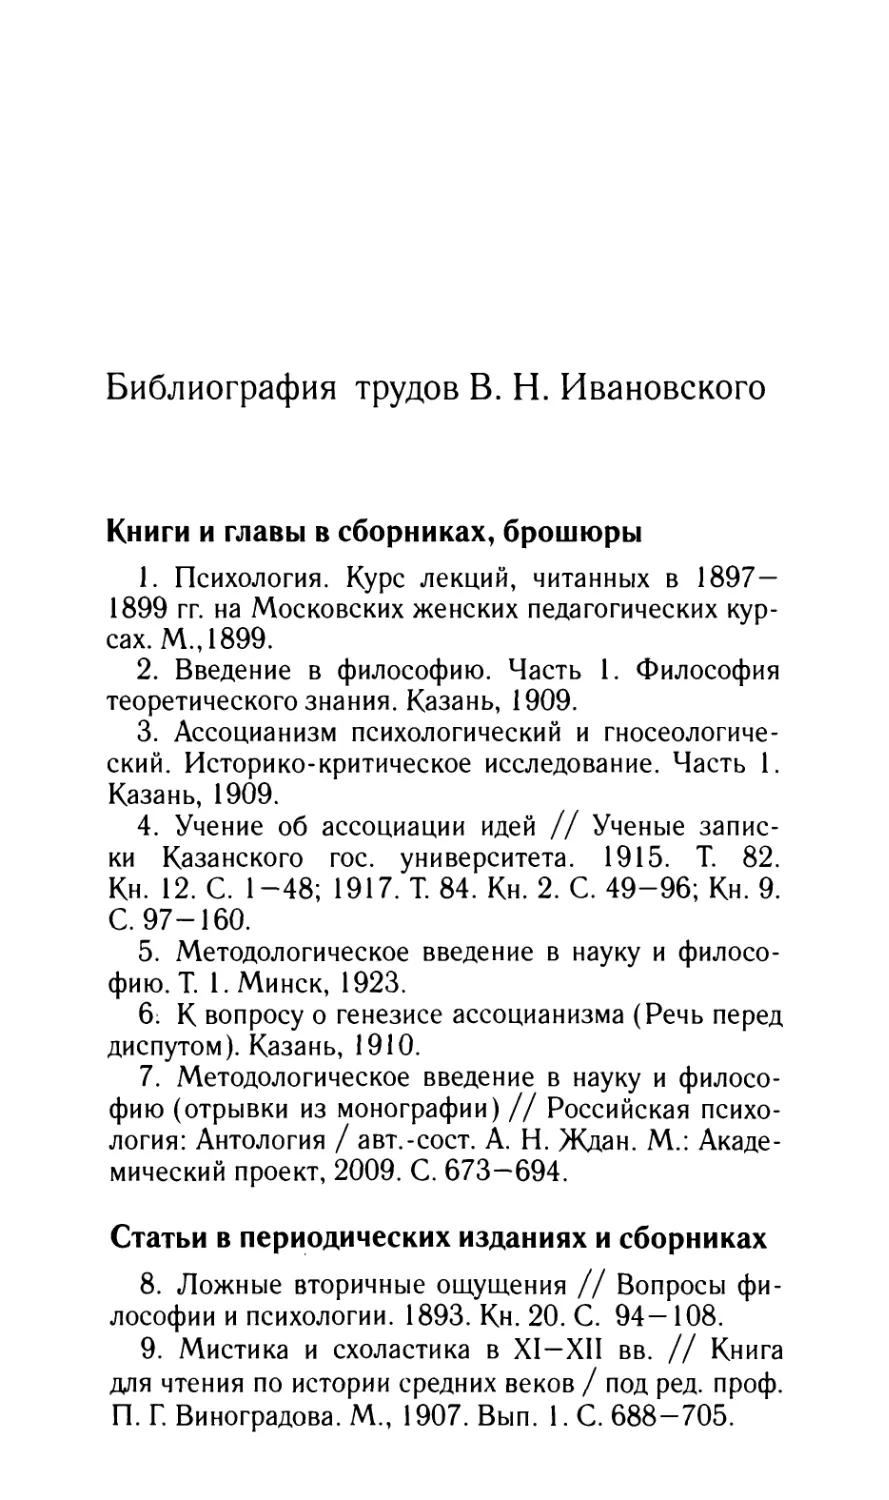 Библиография трудов В.Н. Ивановского